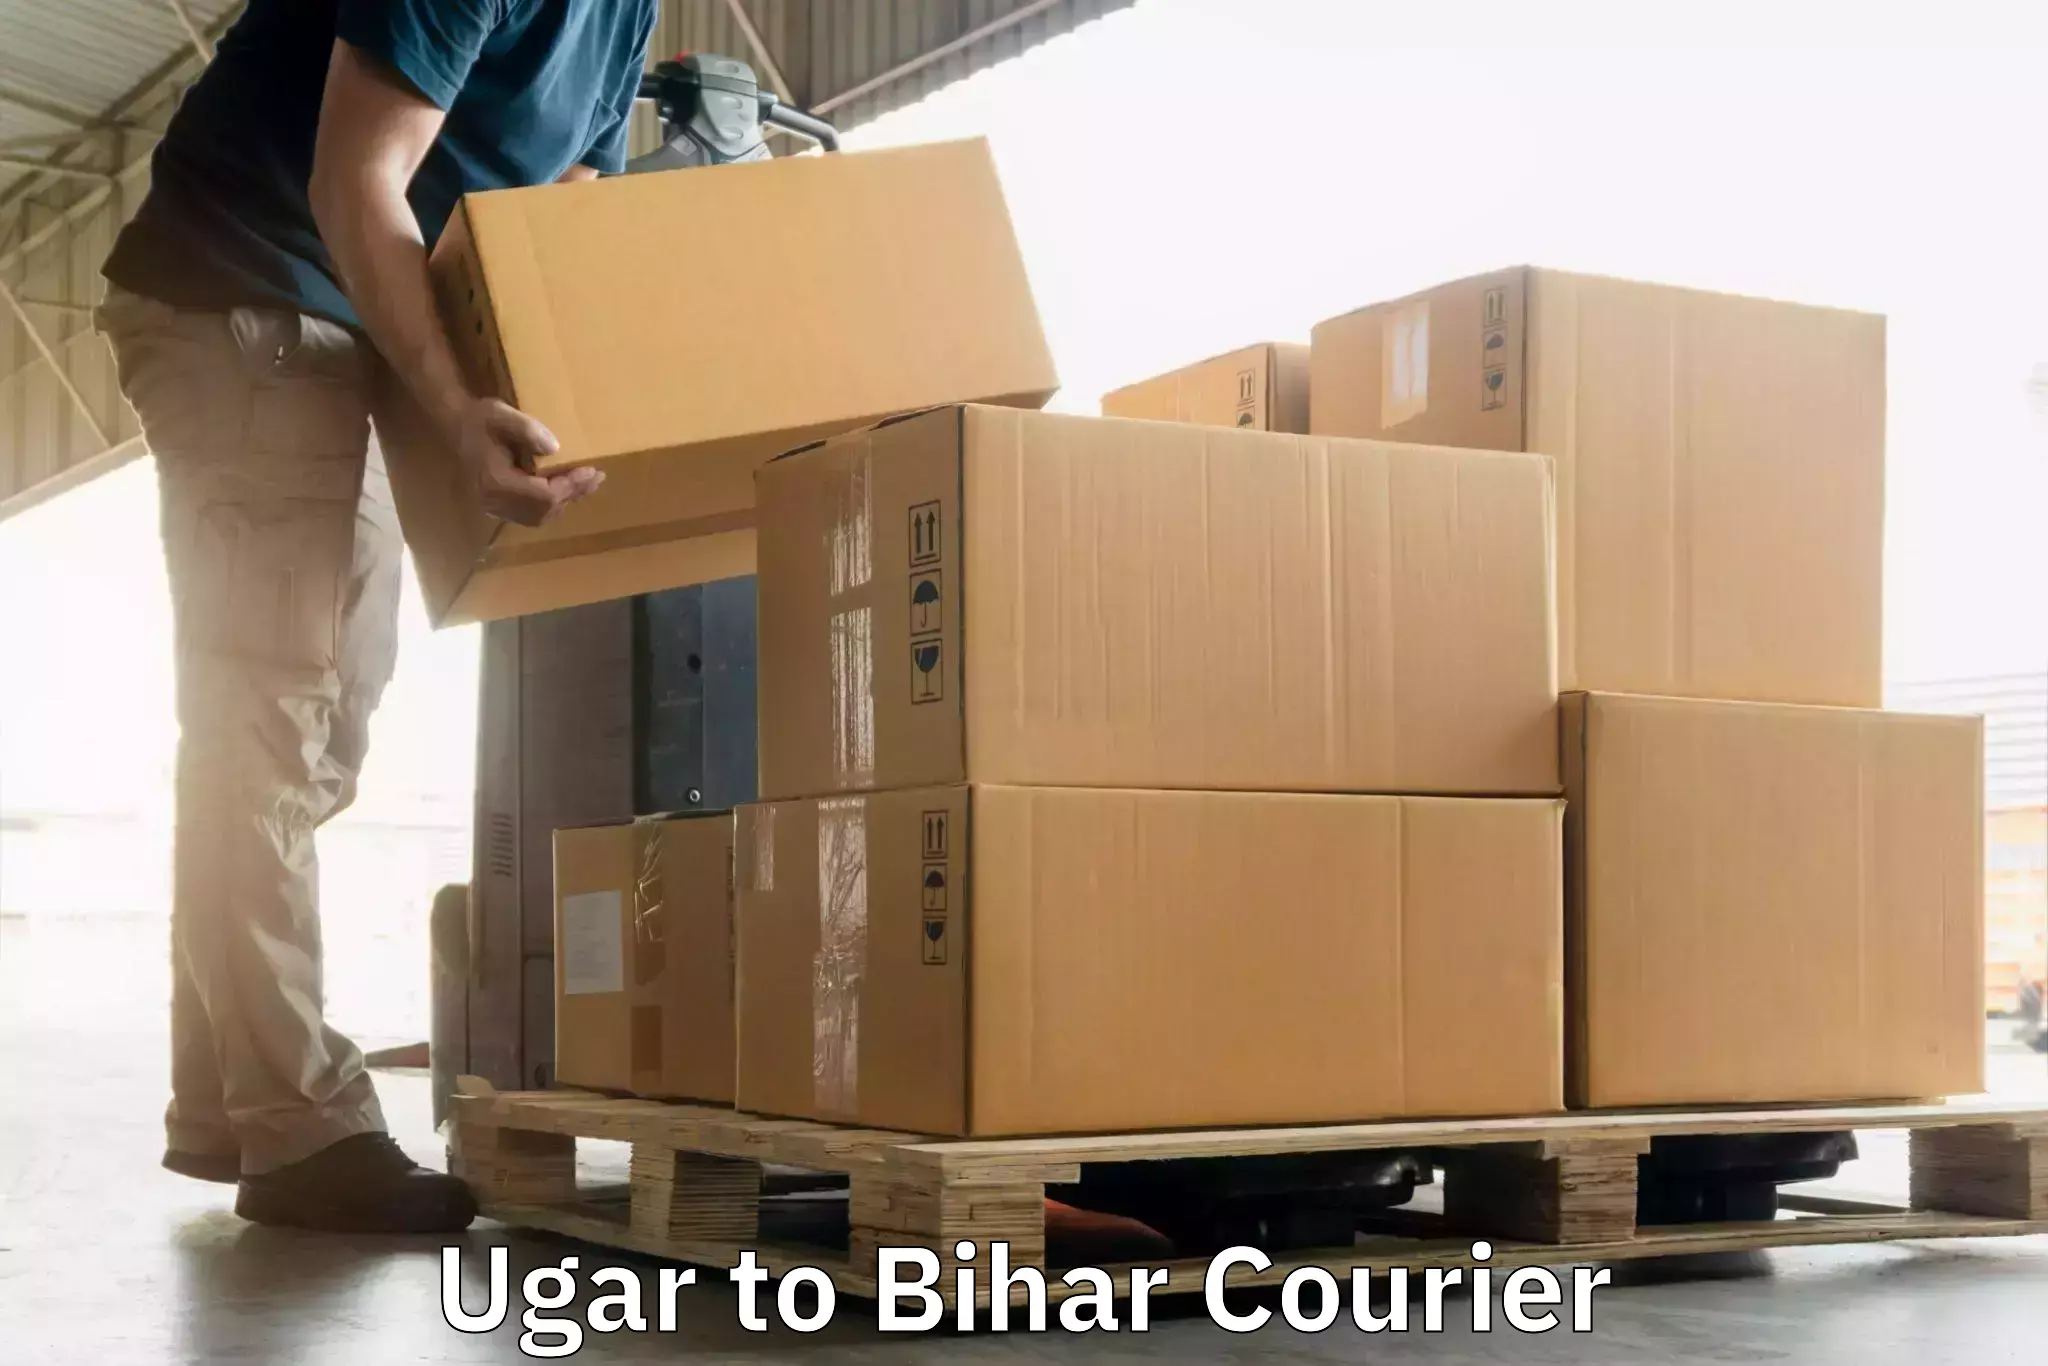 On-demand shipping options Ugar to Dhaka